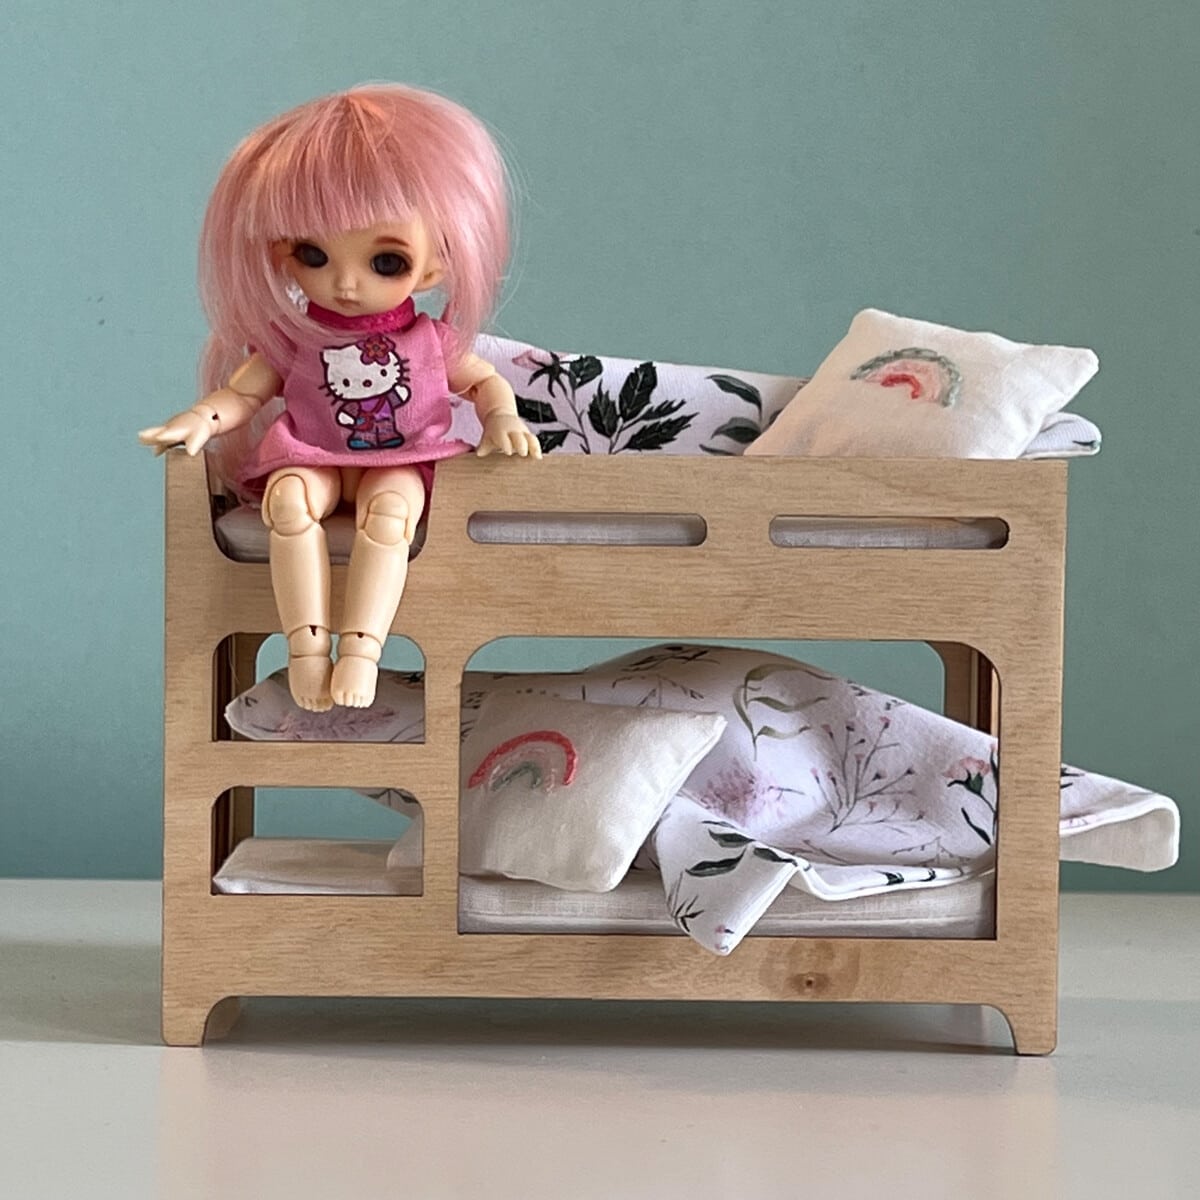 Мебель для кукол. Двуспальная кровать. Мастер-класс - Коробочка идей и мастер-классов